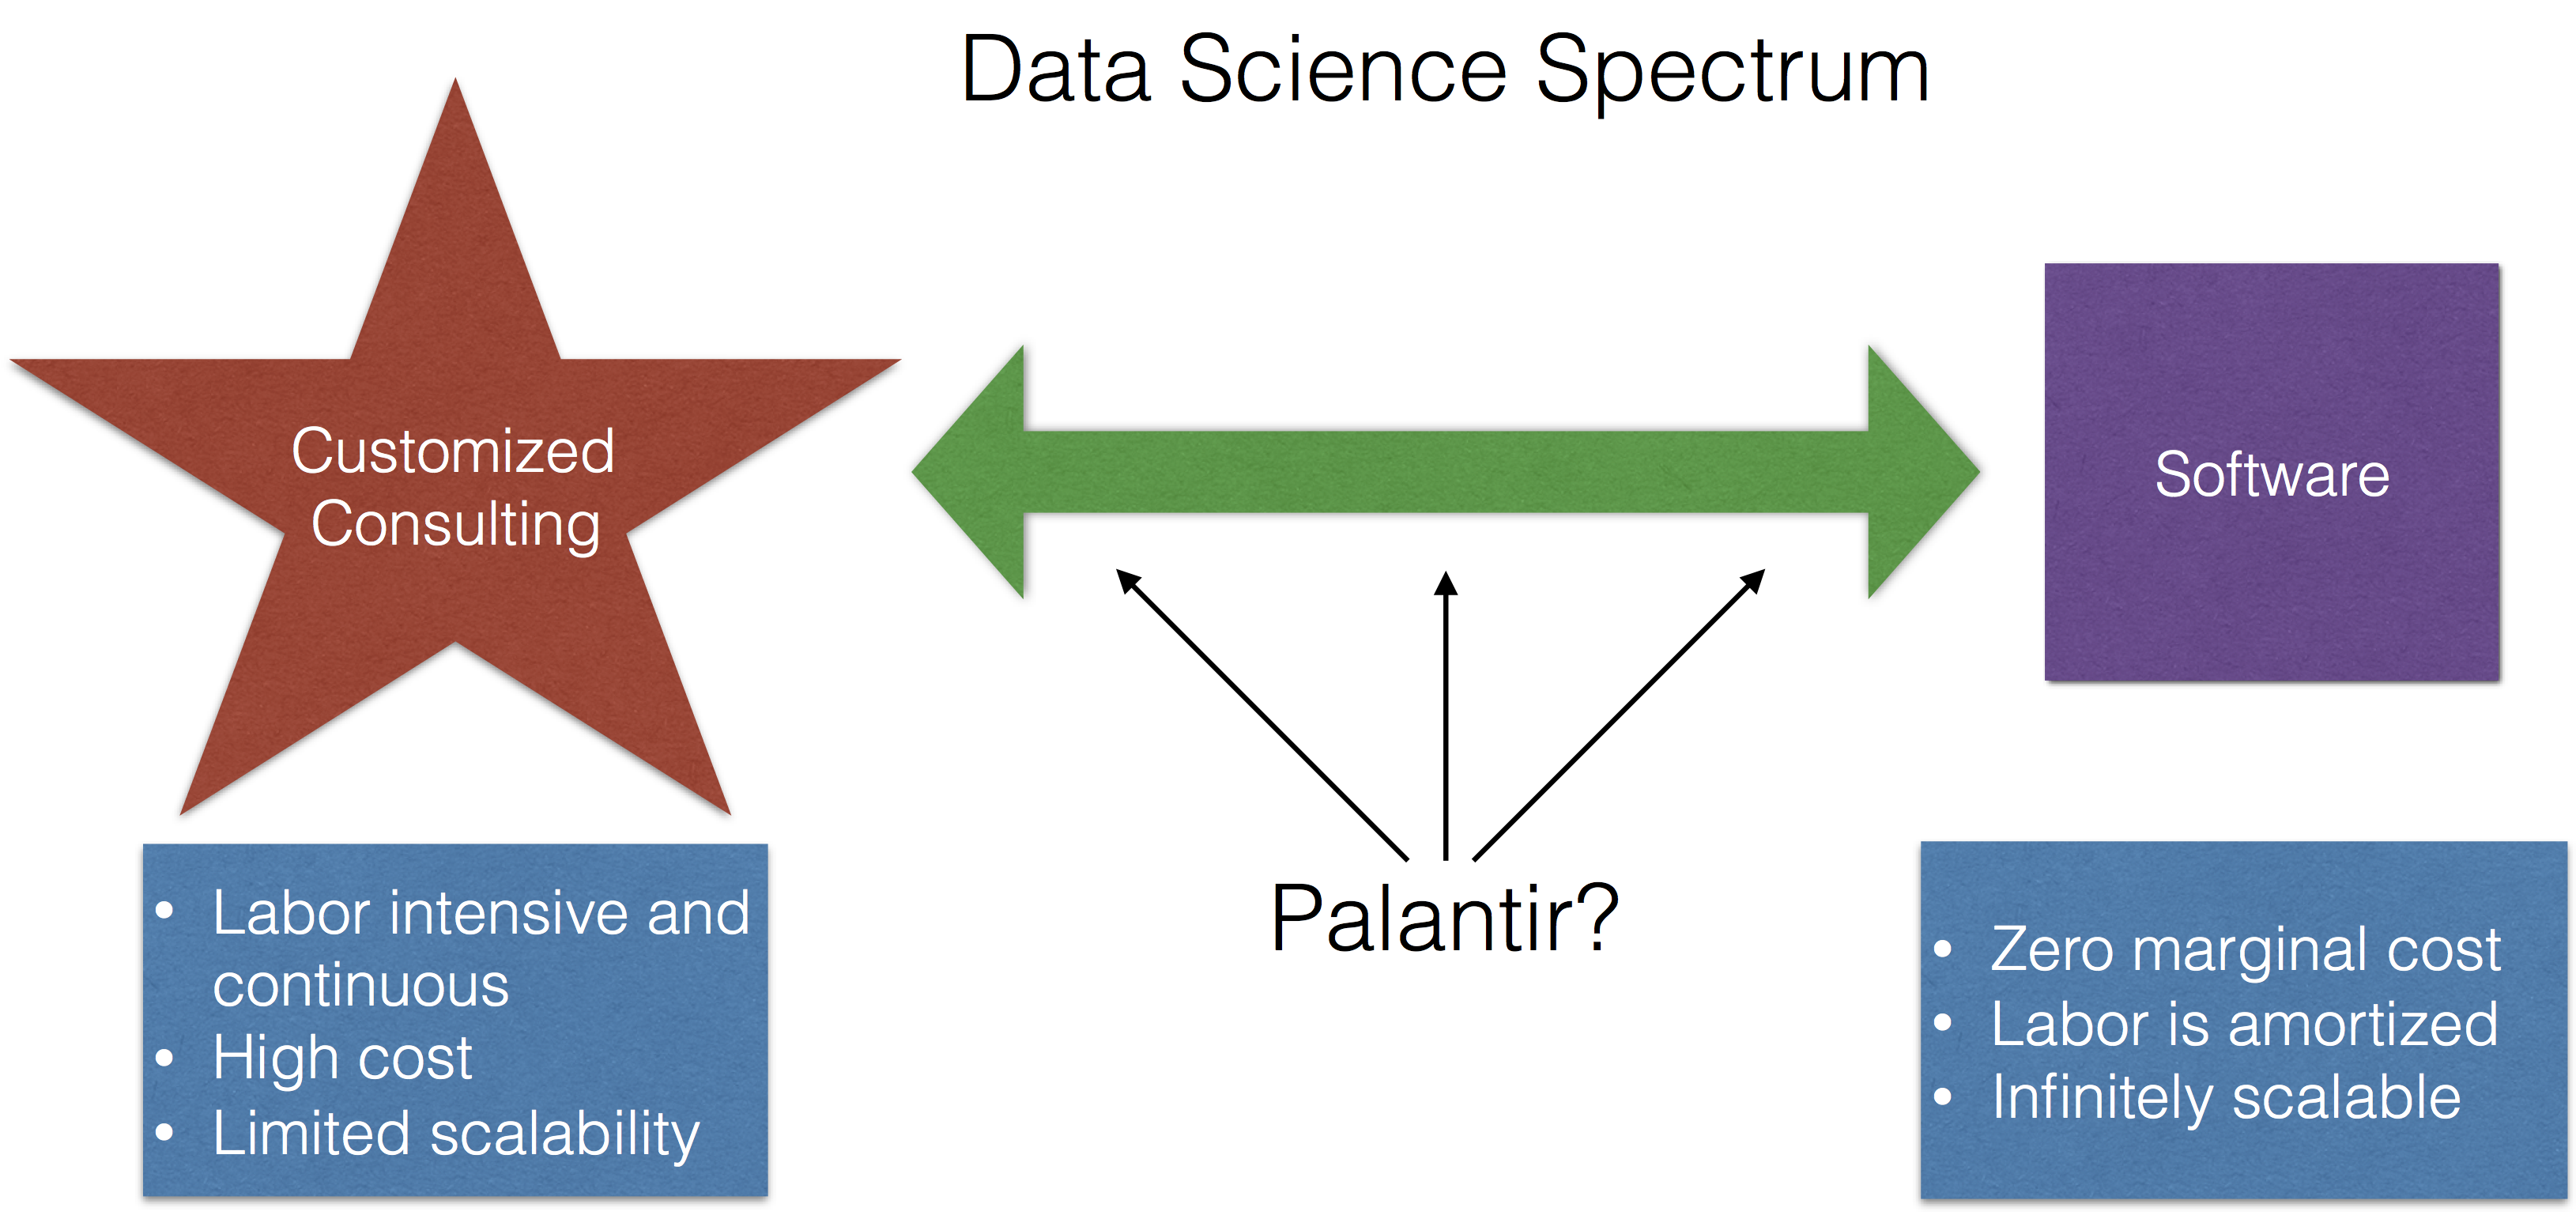 Data Science Spectrum